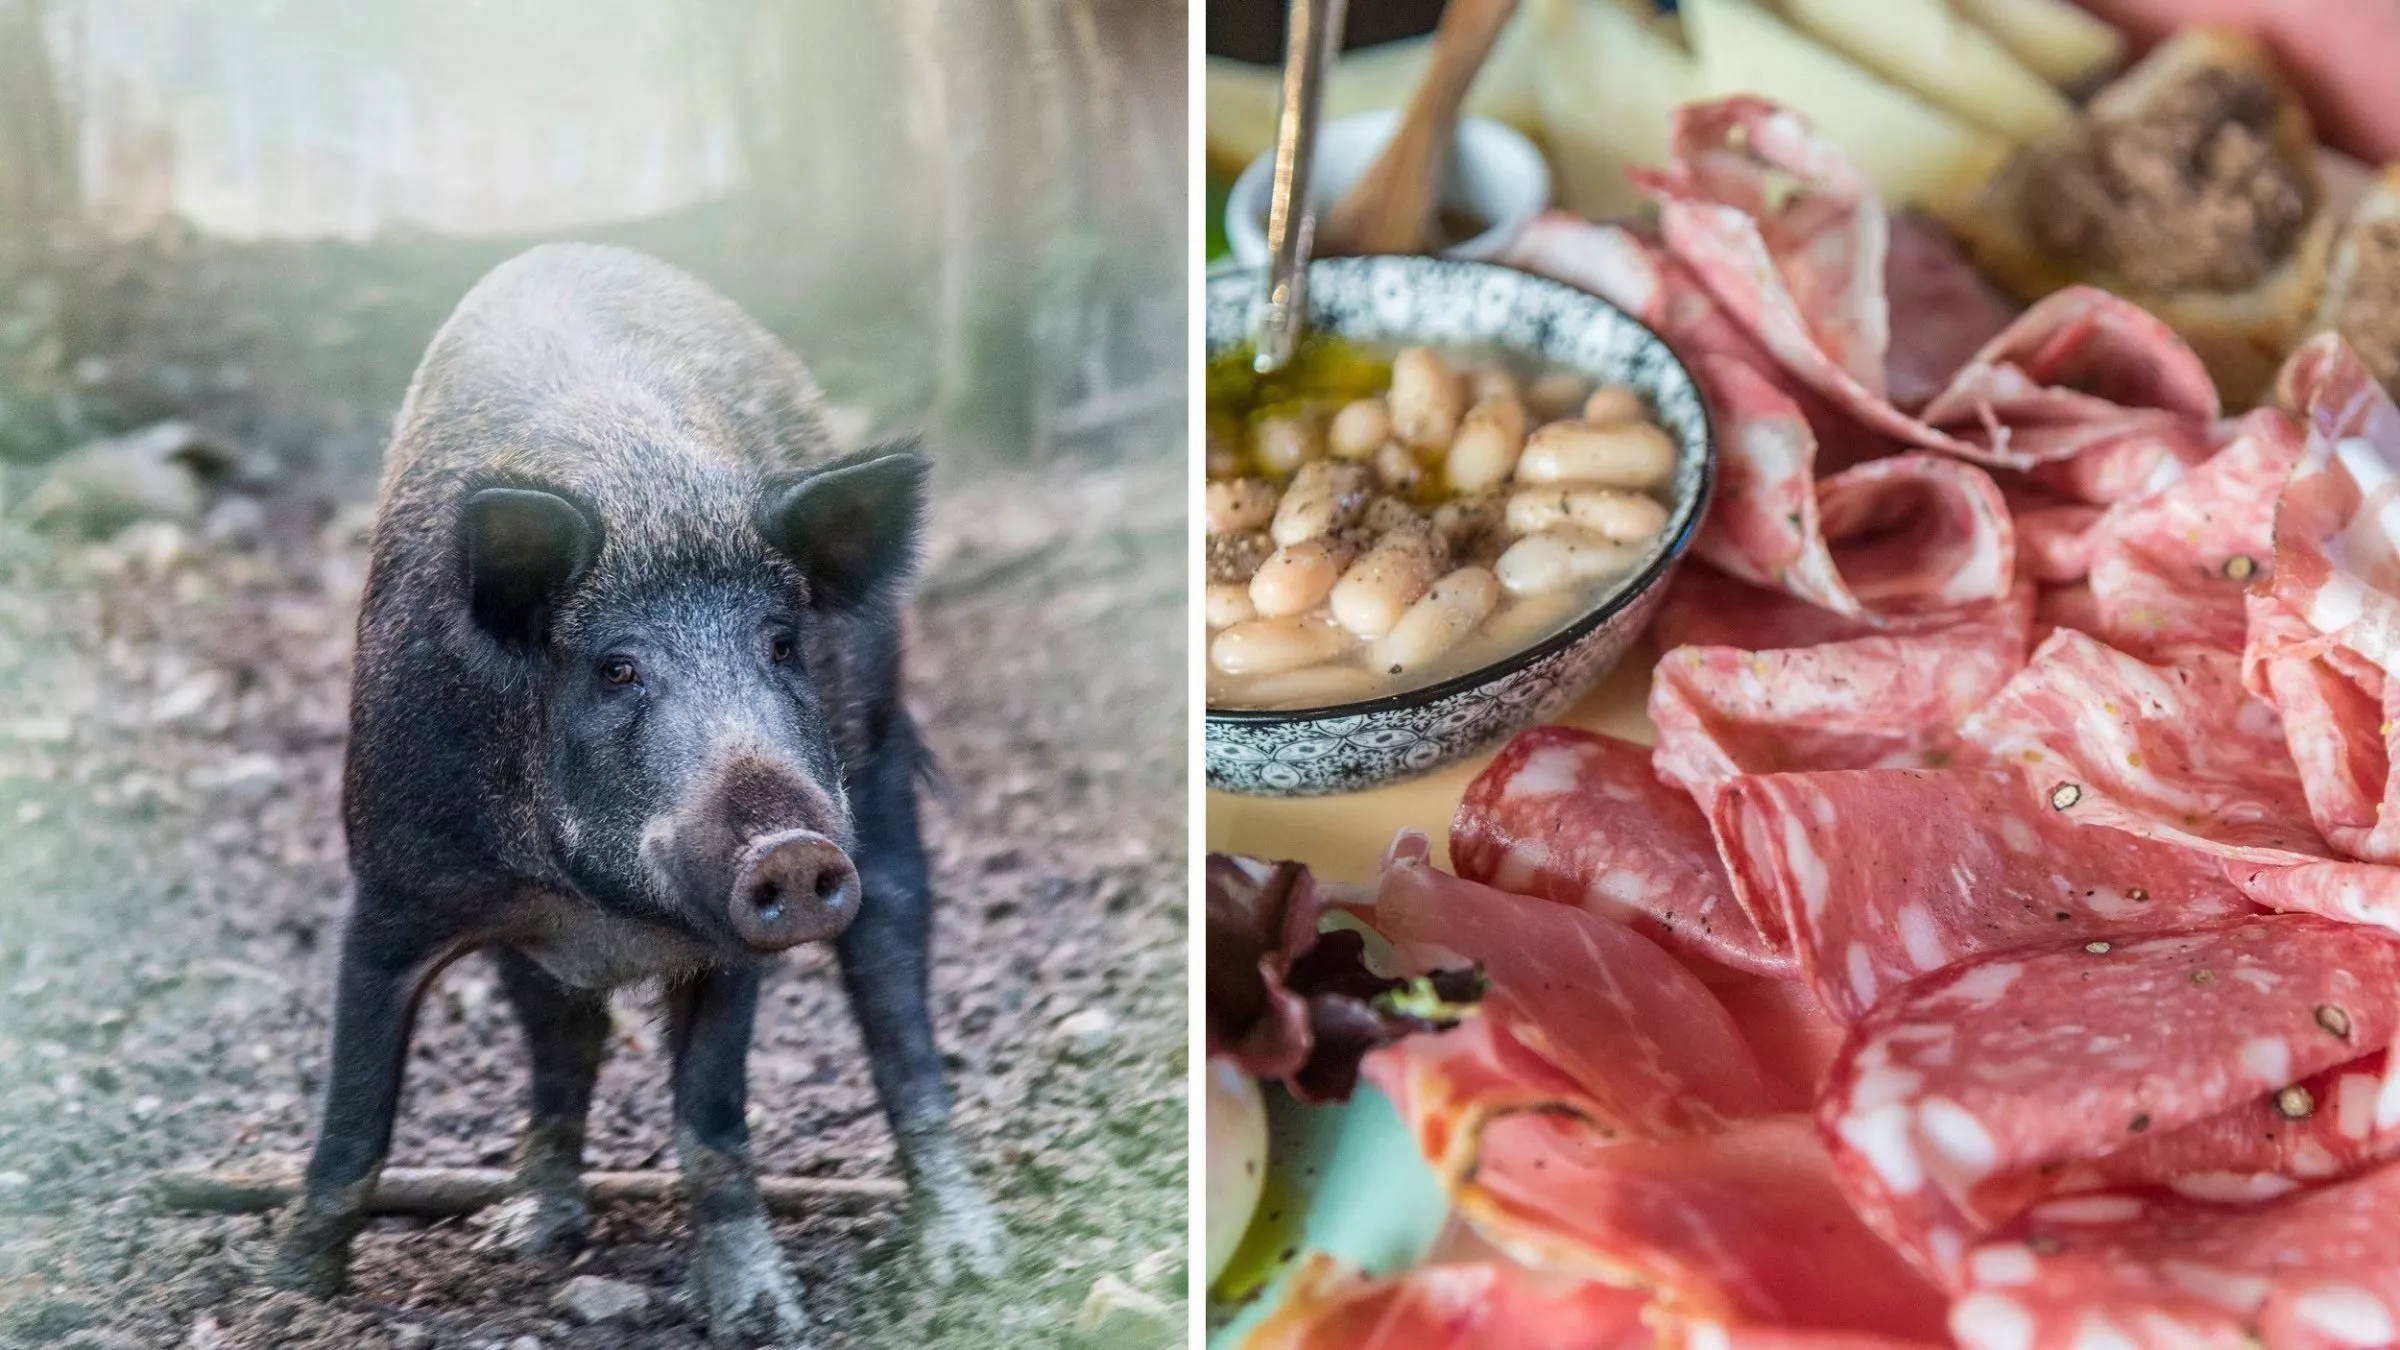 Toskanisches Wildlife: das Wildschwein im Wald, herzhafte Wurst und weiße Bohnen auf dem Teller